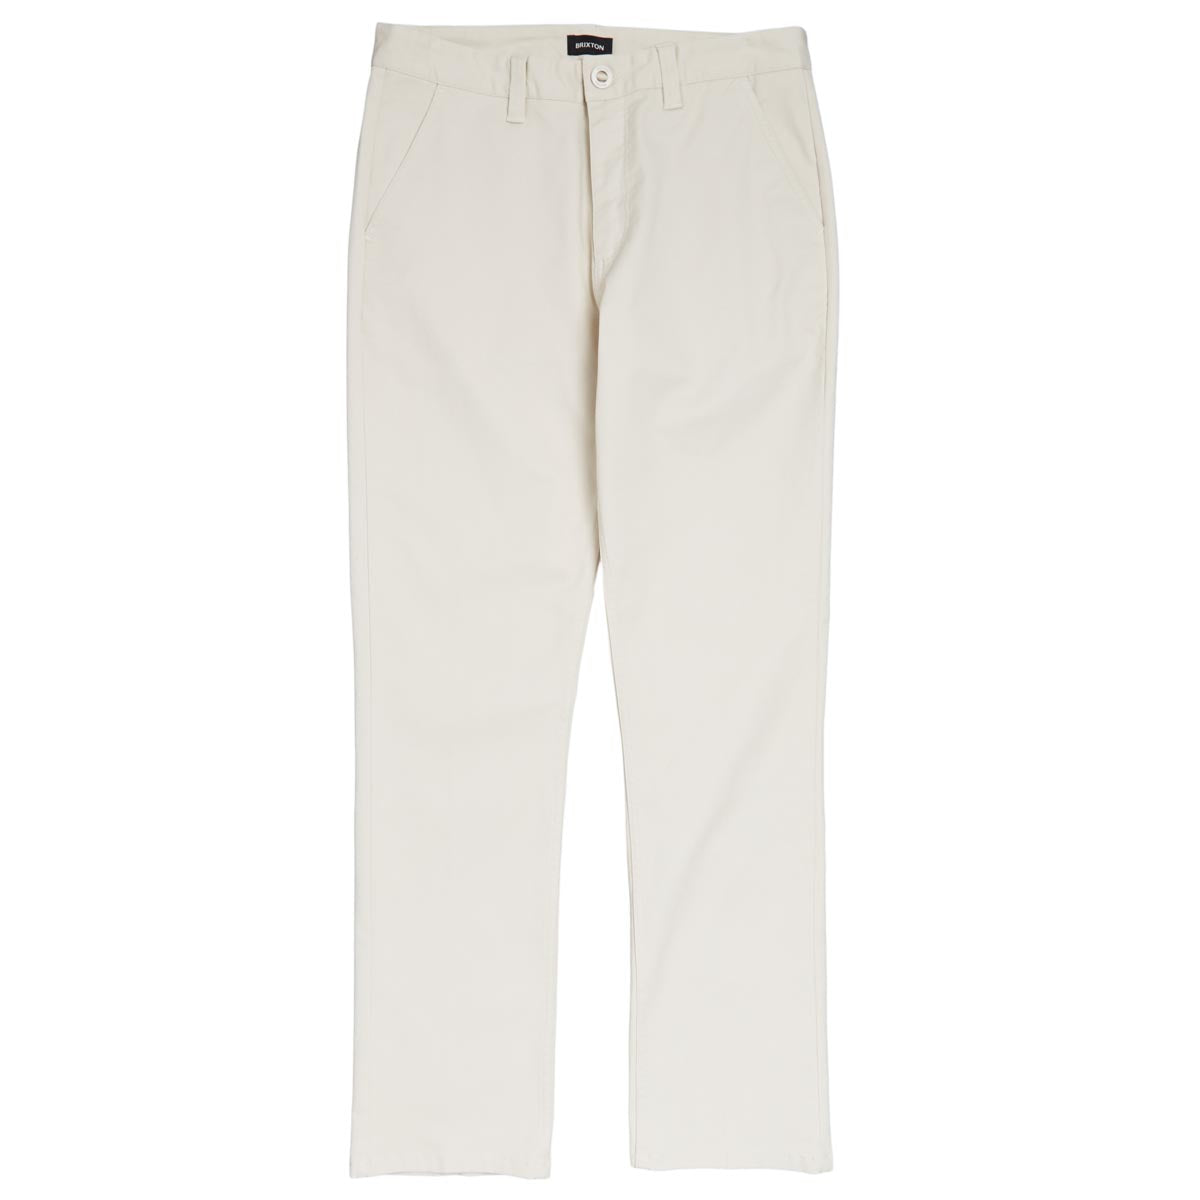 Brixton Choice Chino Regular Pants - Whitecap image 1